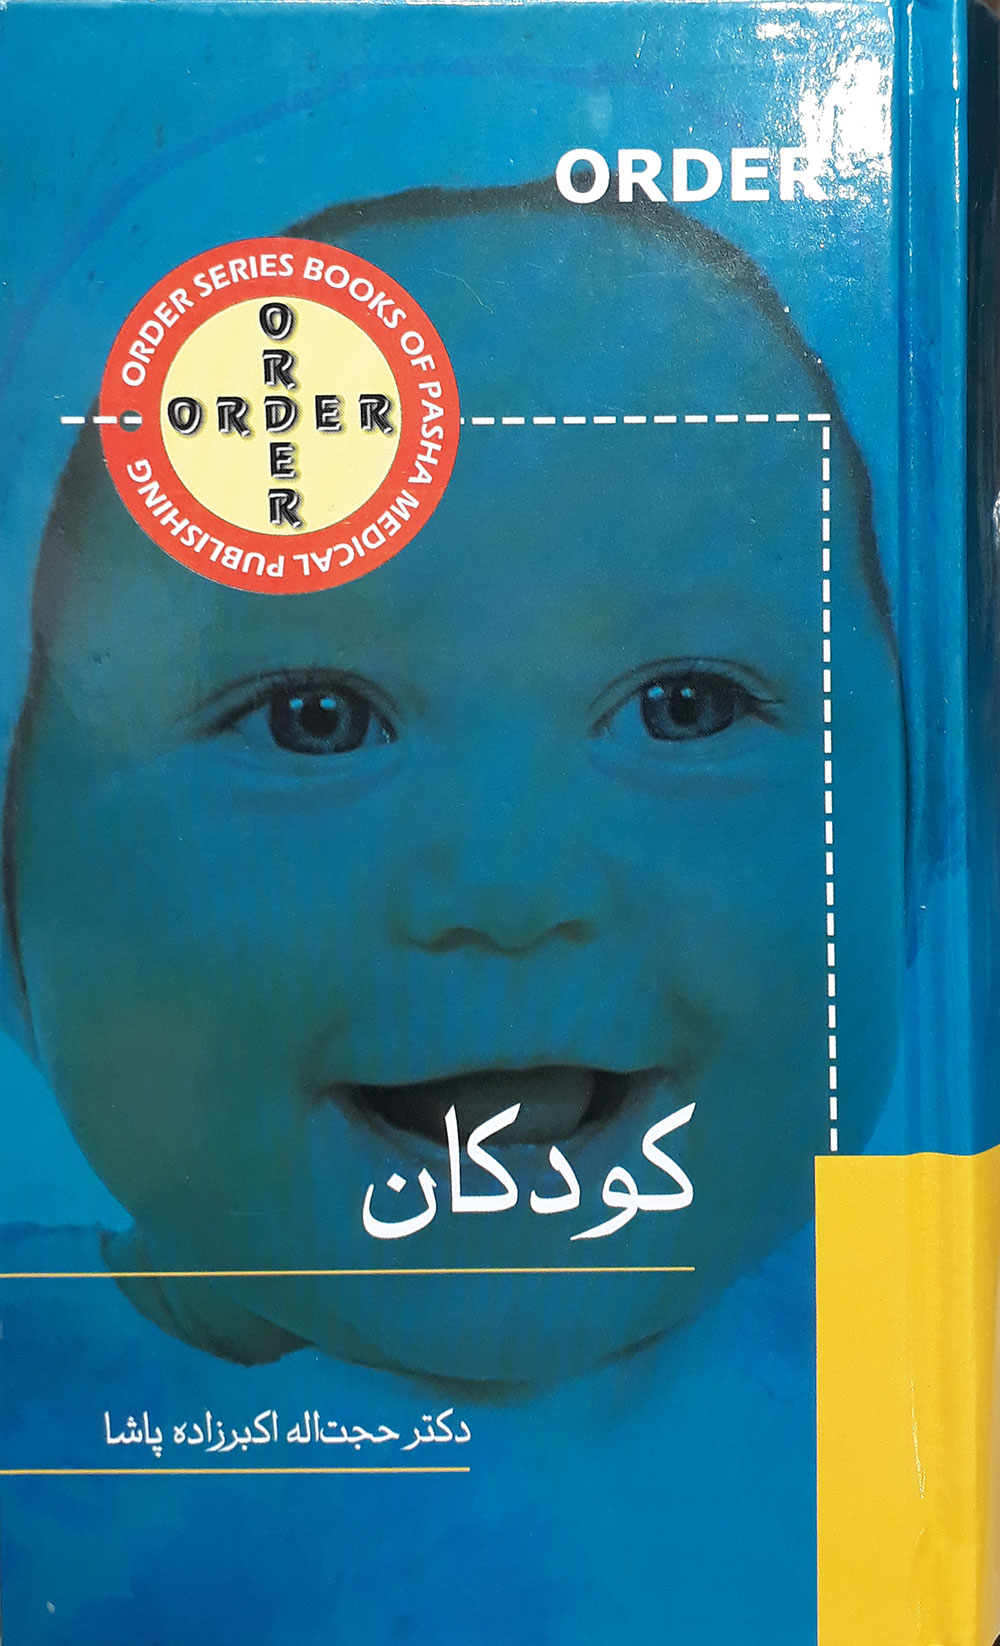 کتاب order کودکان-نویسنده دکتر حجت اله اکبرزاده پاشا